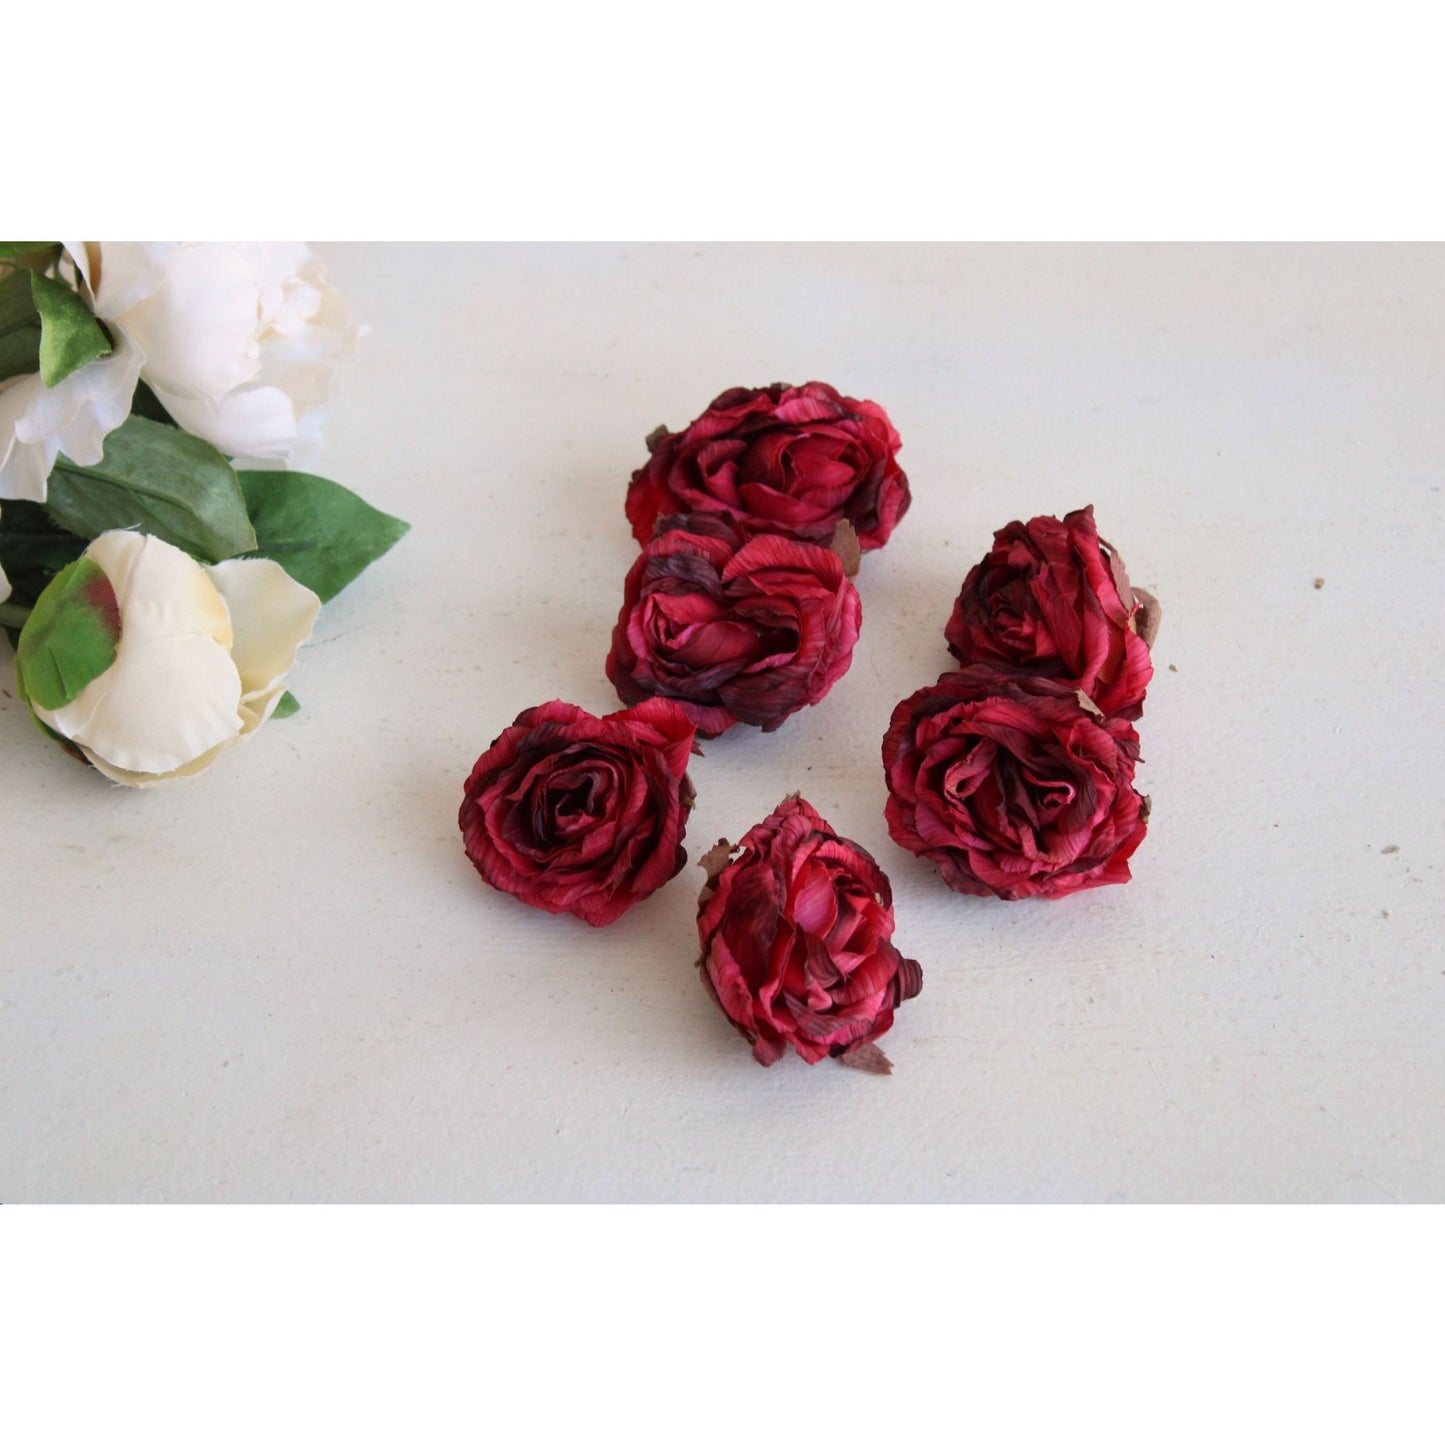 Vintage Silk Rose Flowers, Half Dozen